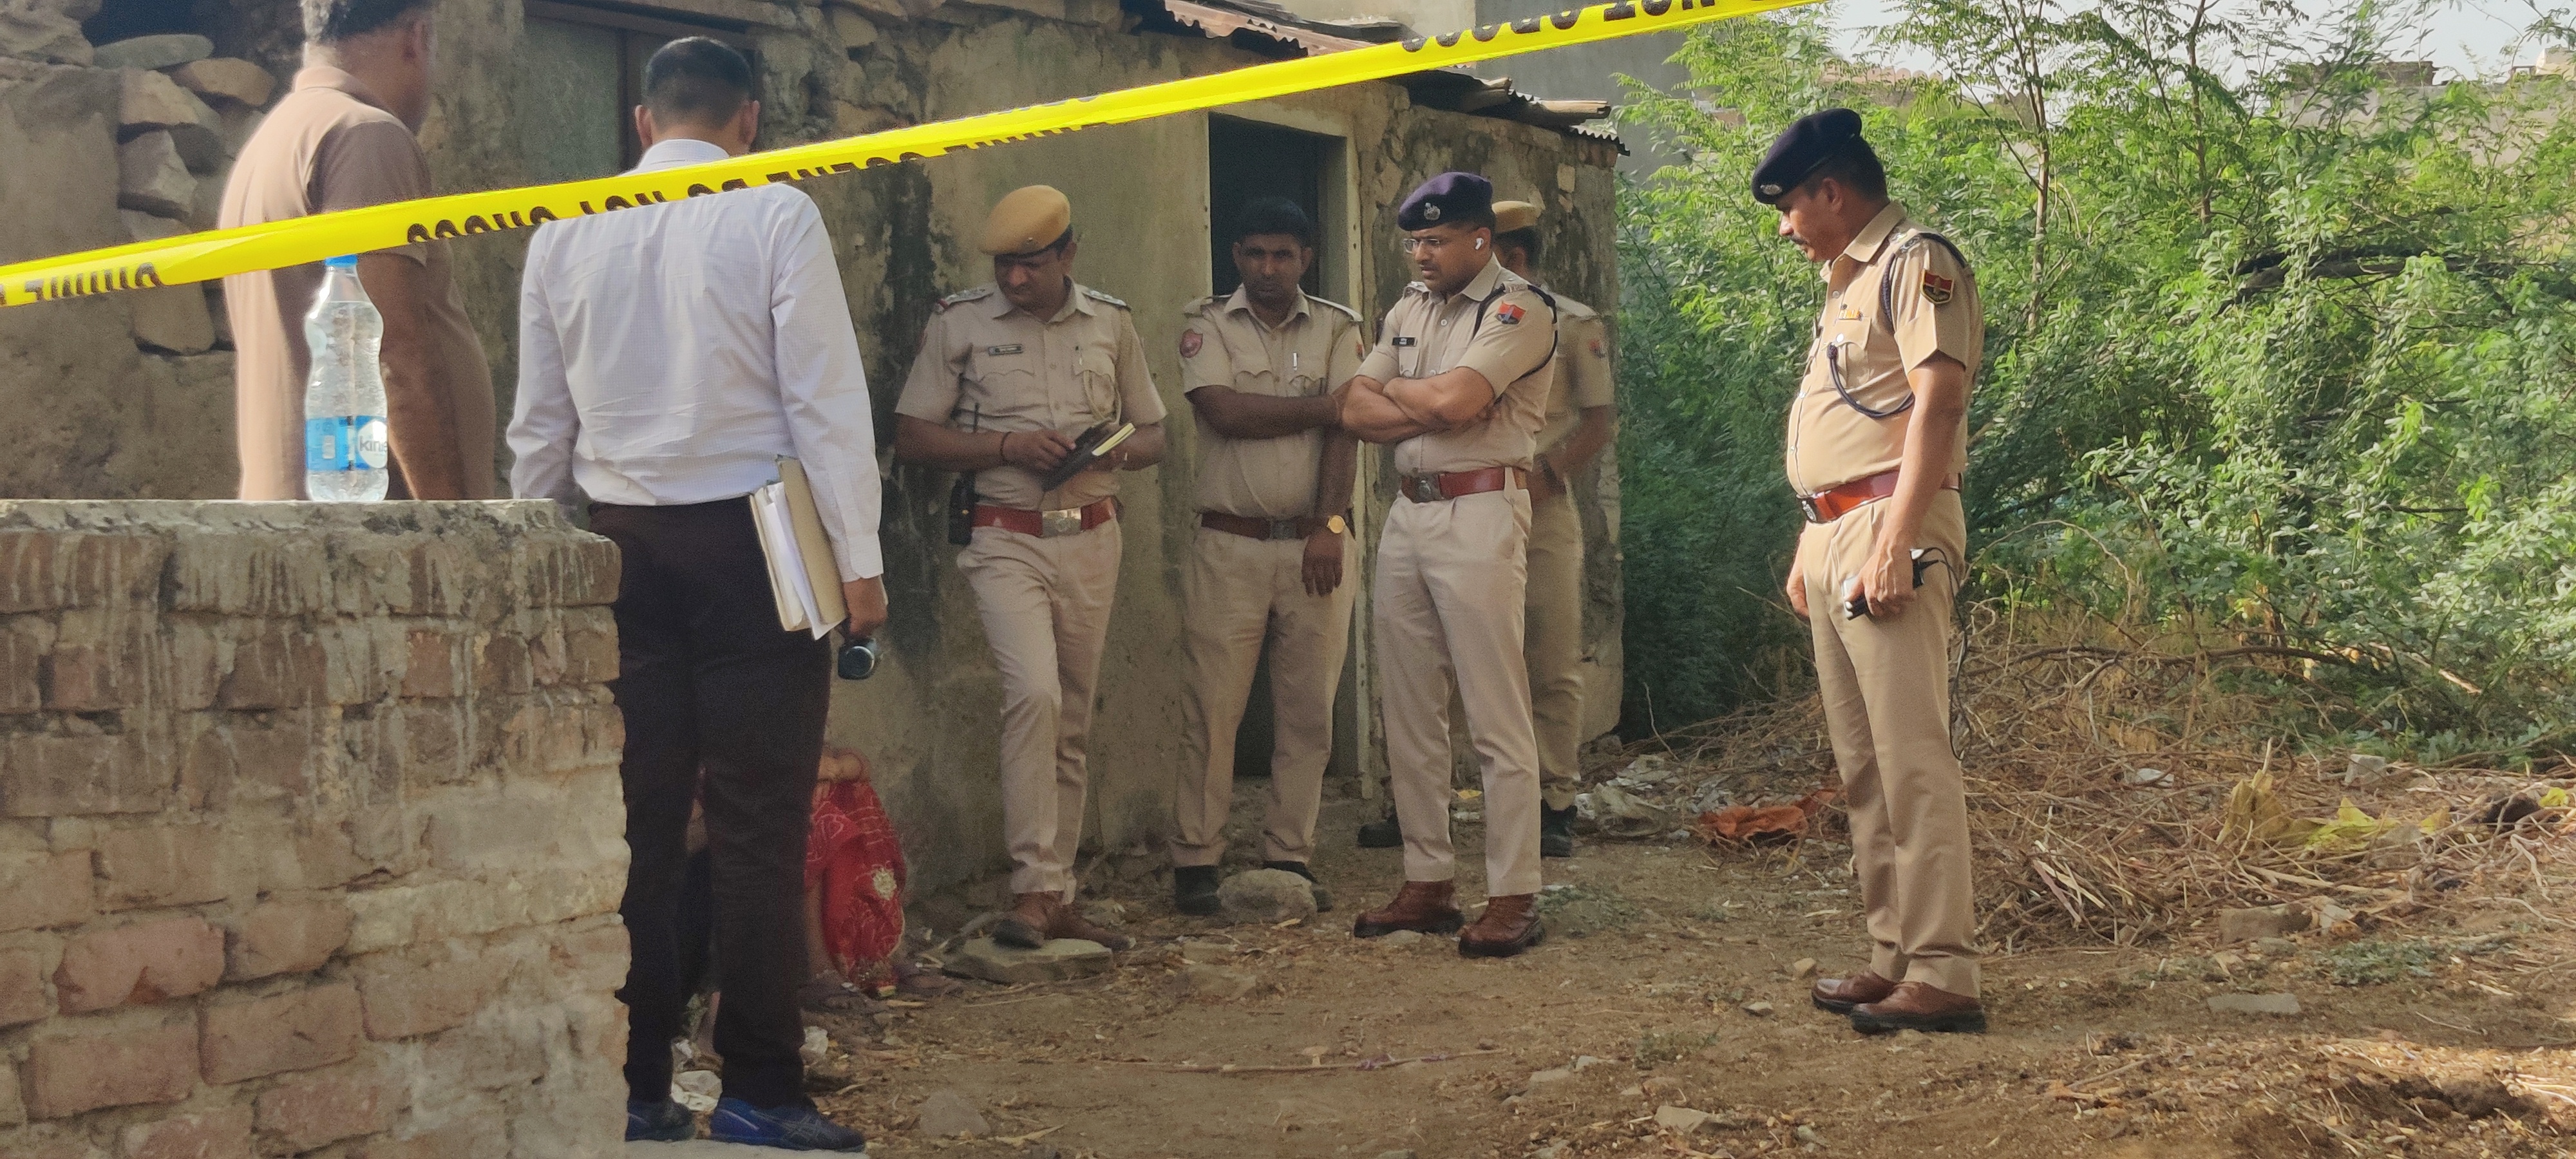 जयपुर में घर से लापता 9 साल की बालिका का नग्न अवस्था में शव मिला, इलाके में फैली सनसनी